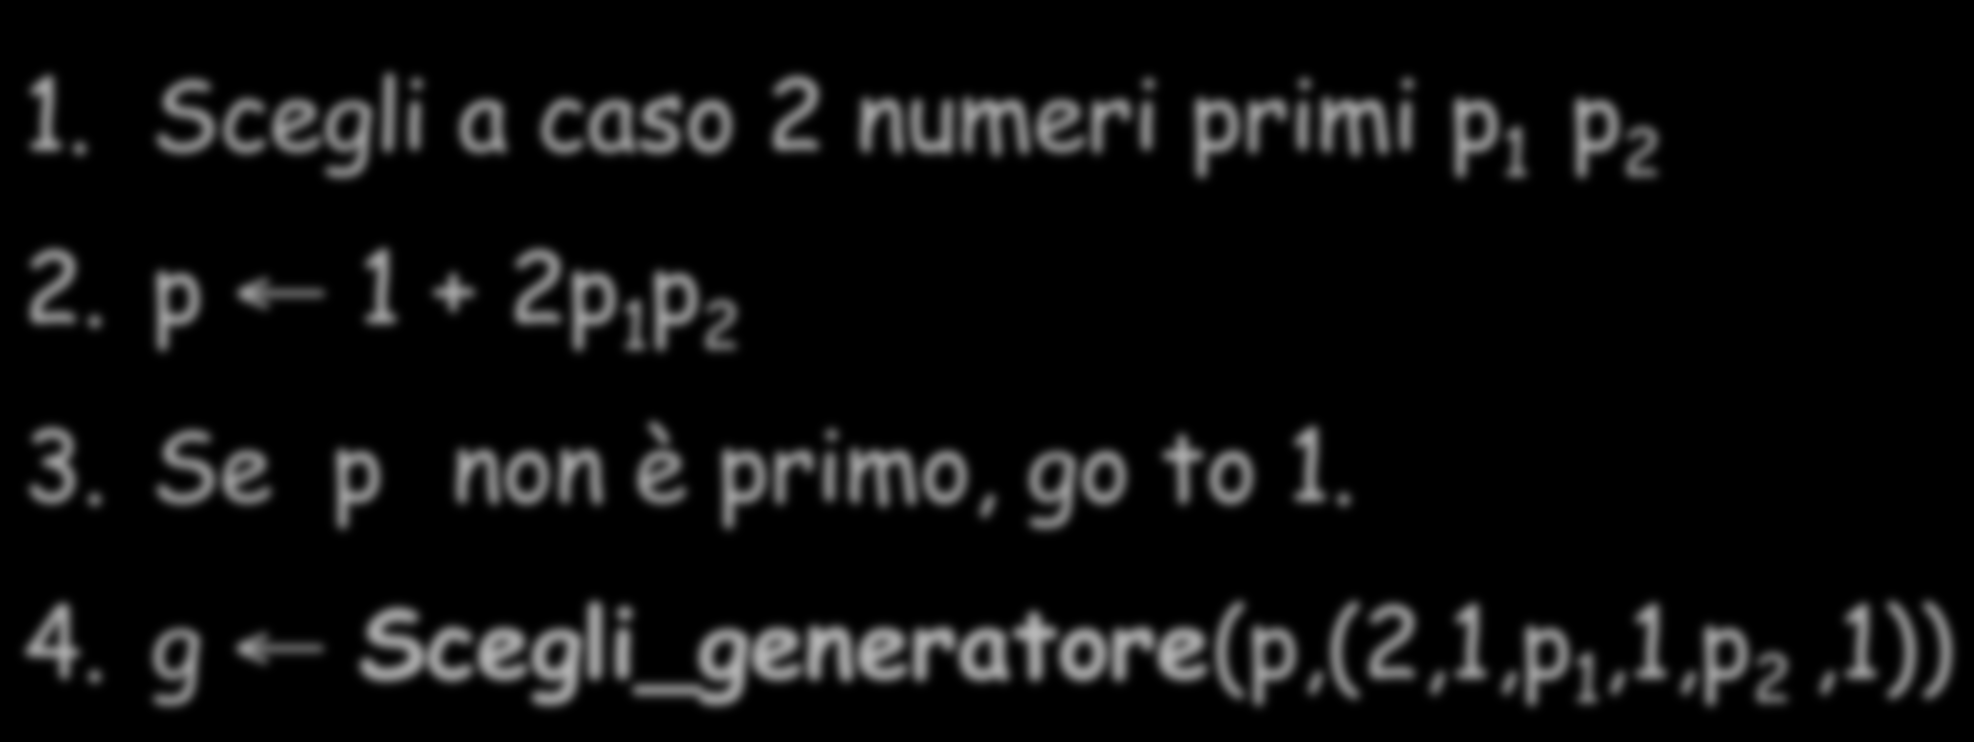 Generazione chiavi Diffie-Hellman 1. Scegli a caso 2 numeri primi p 1 p 2 2.